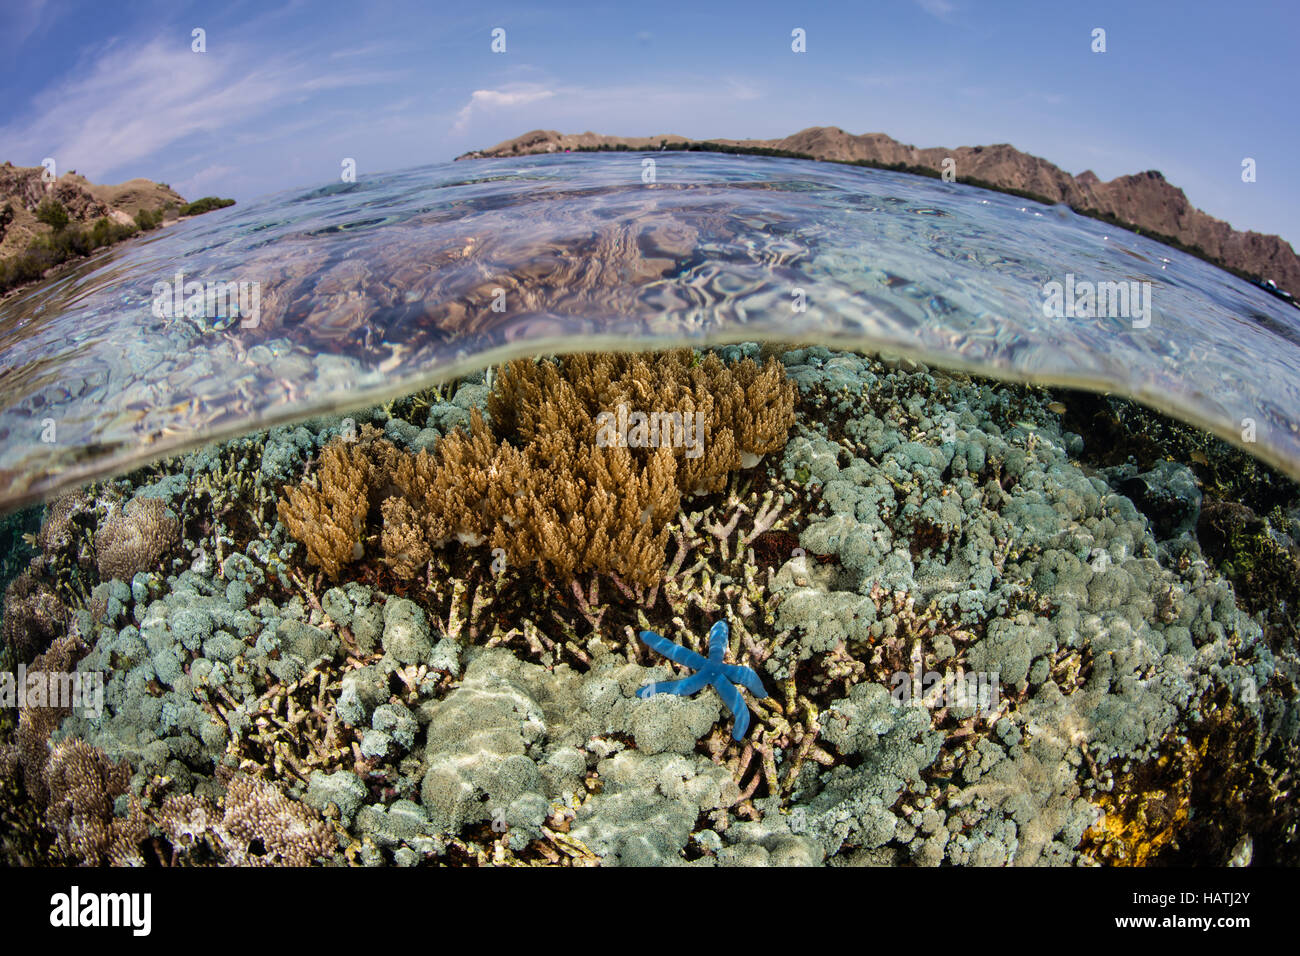 Eine gesunde Reihe von Korallen wächst im flachen Wasser im Komodo National Park. Diese Region ist bekannt für seine hohe Artenvielfalt. Stockfoto